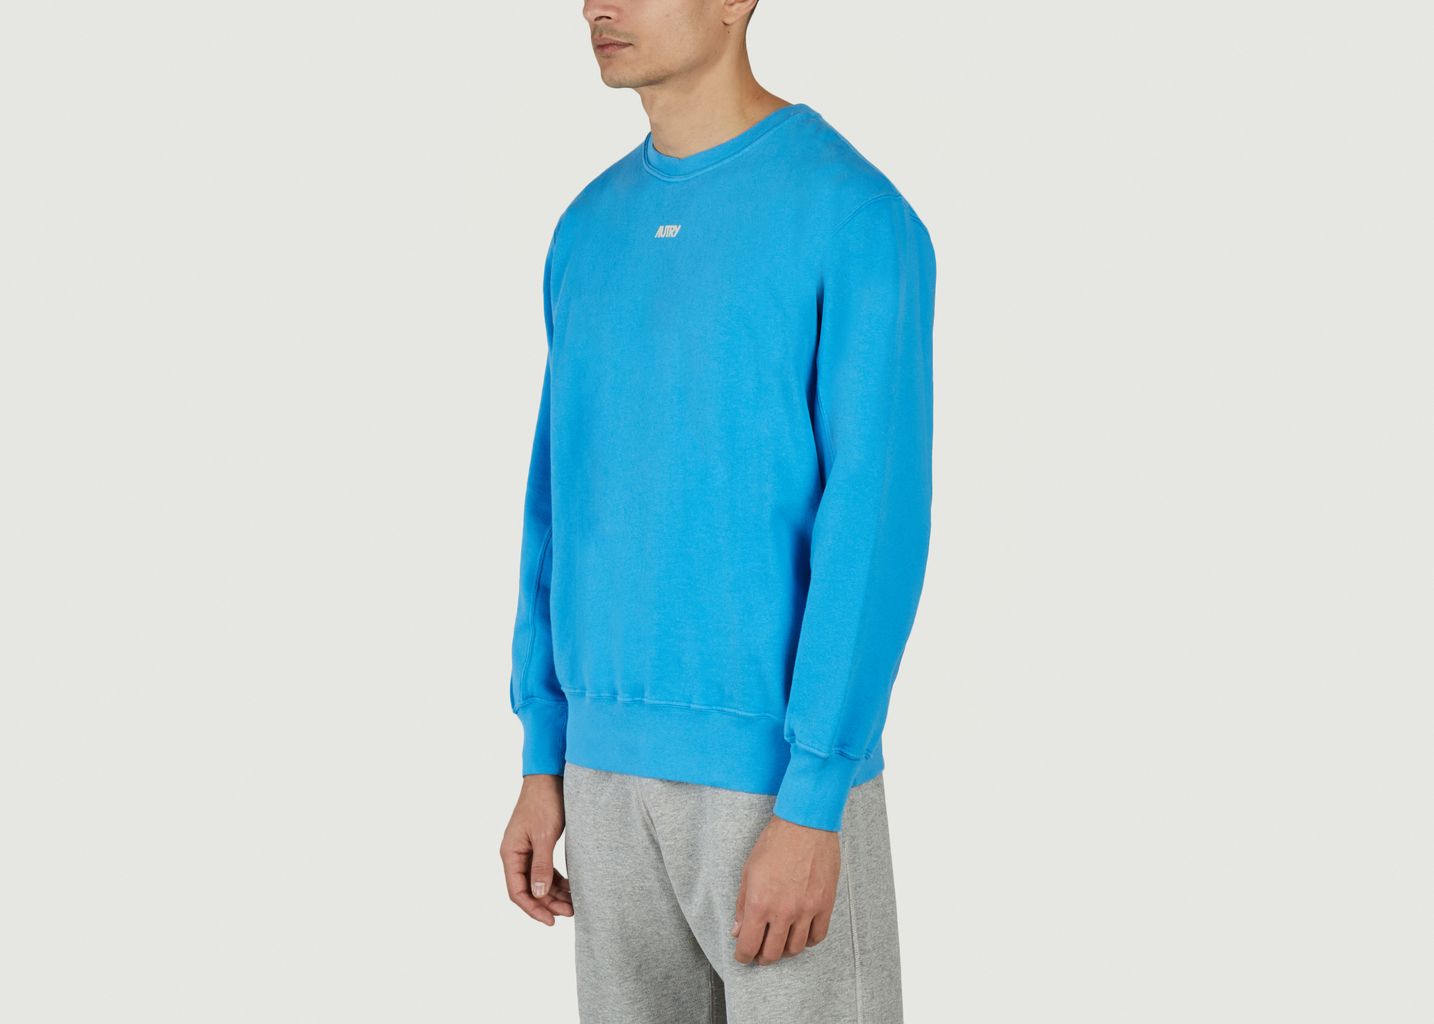 Sweatshirt Bicolor - AUTRY